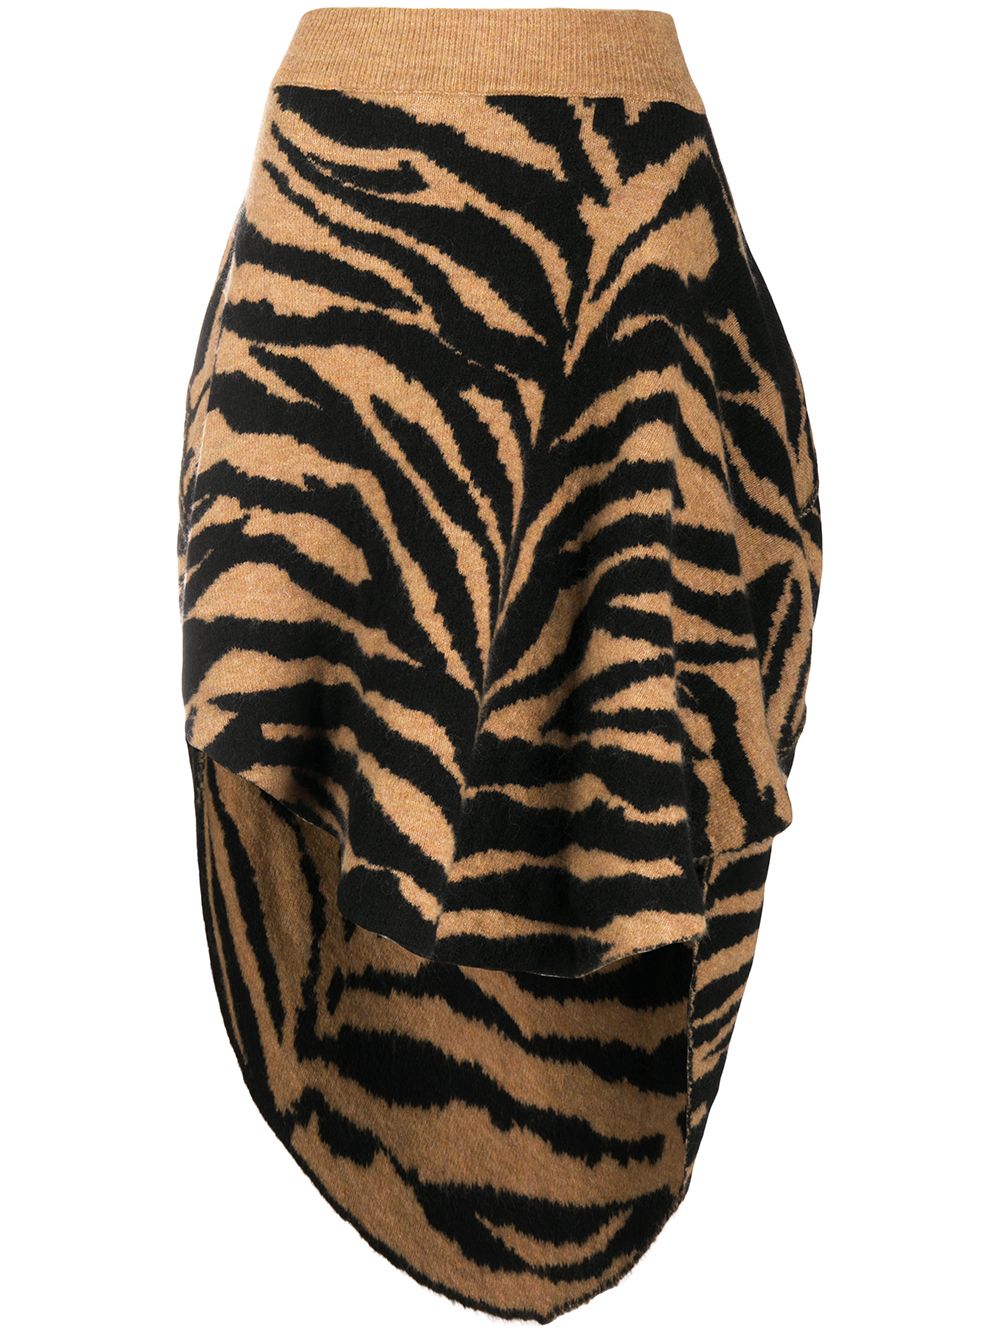 фото Mm6 maison margiela юбка асимметричного кроя с тигровым принтом